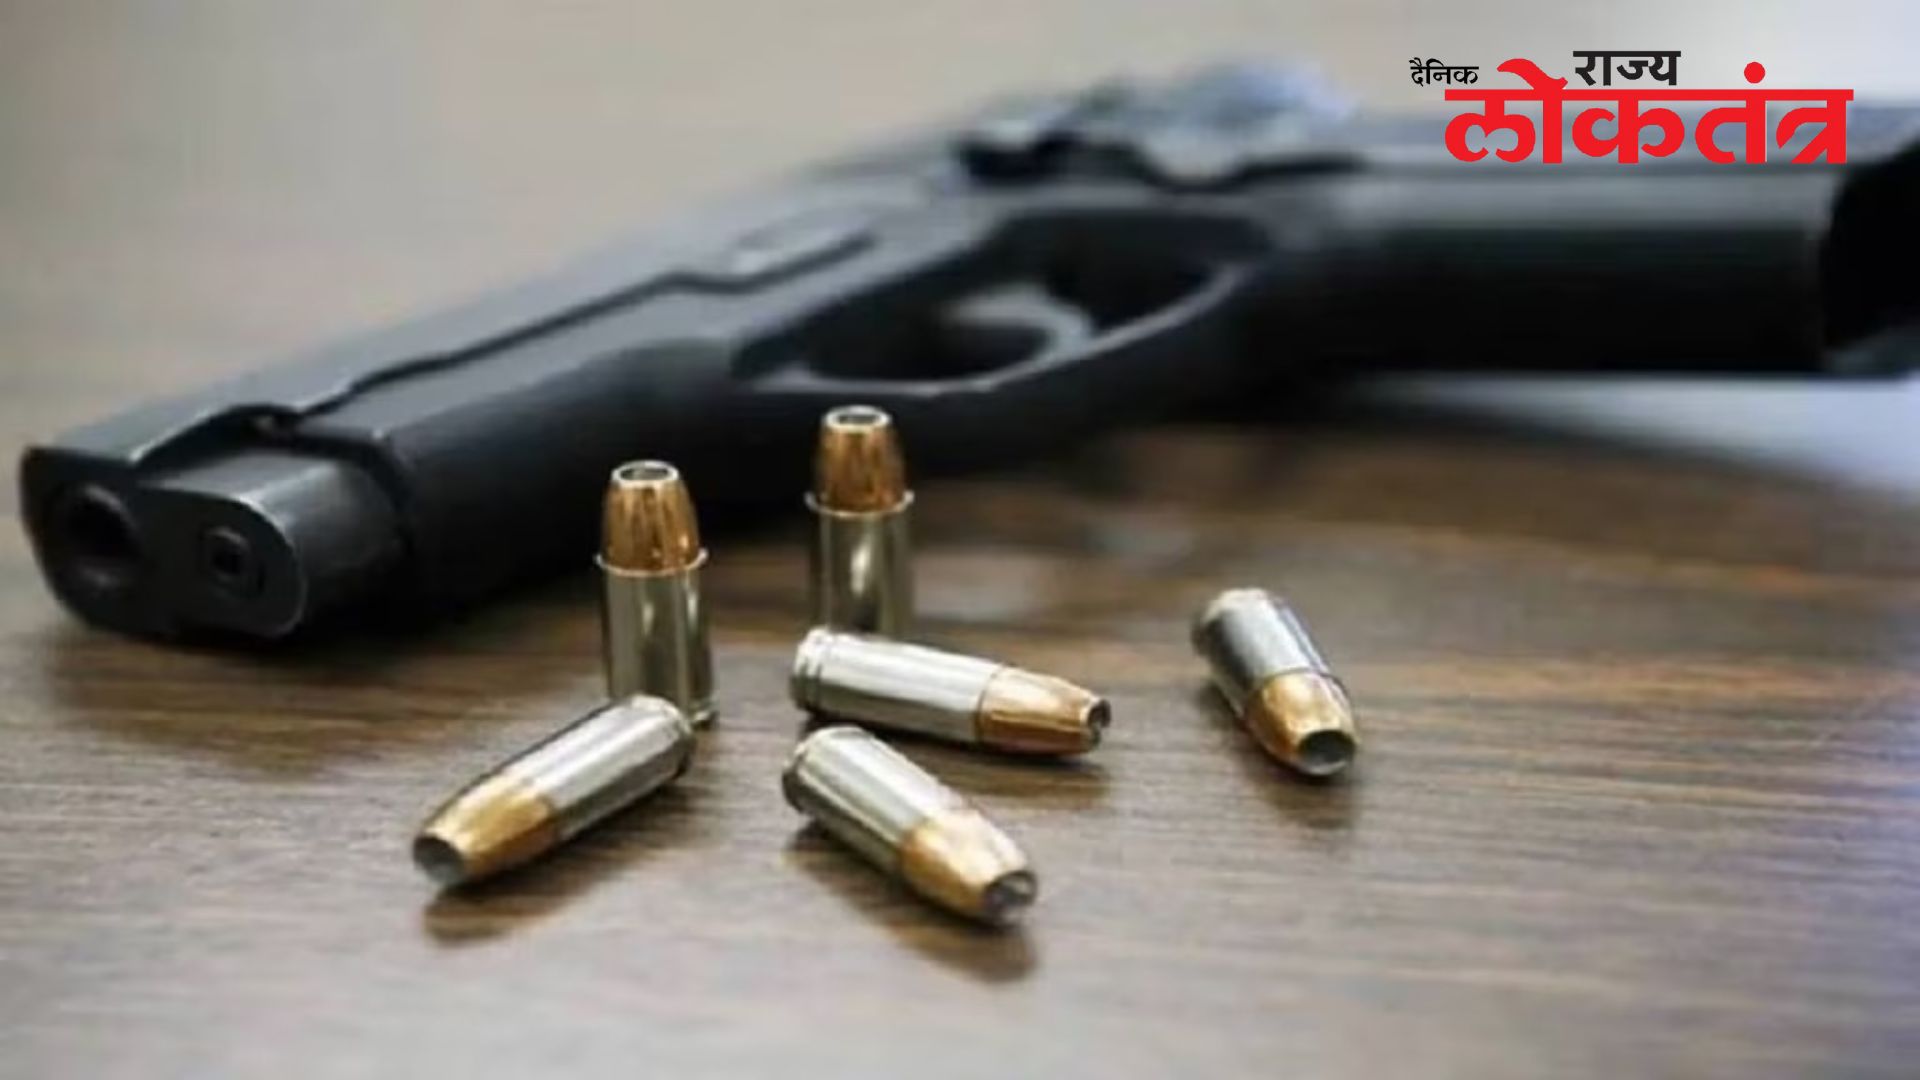 लष्करी सरावादरम्यान कोथरुडमध्ये सदनिकेच्या खिडकीवर बंदुकीची गोळी